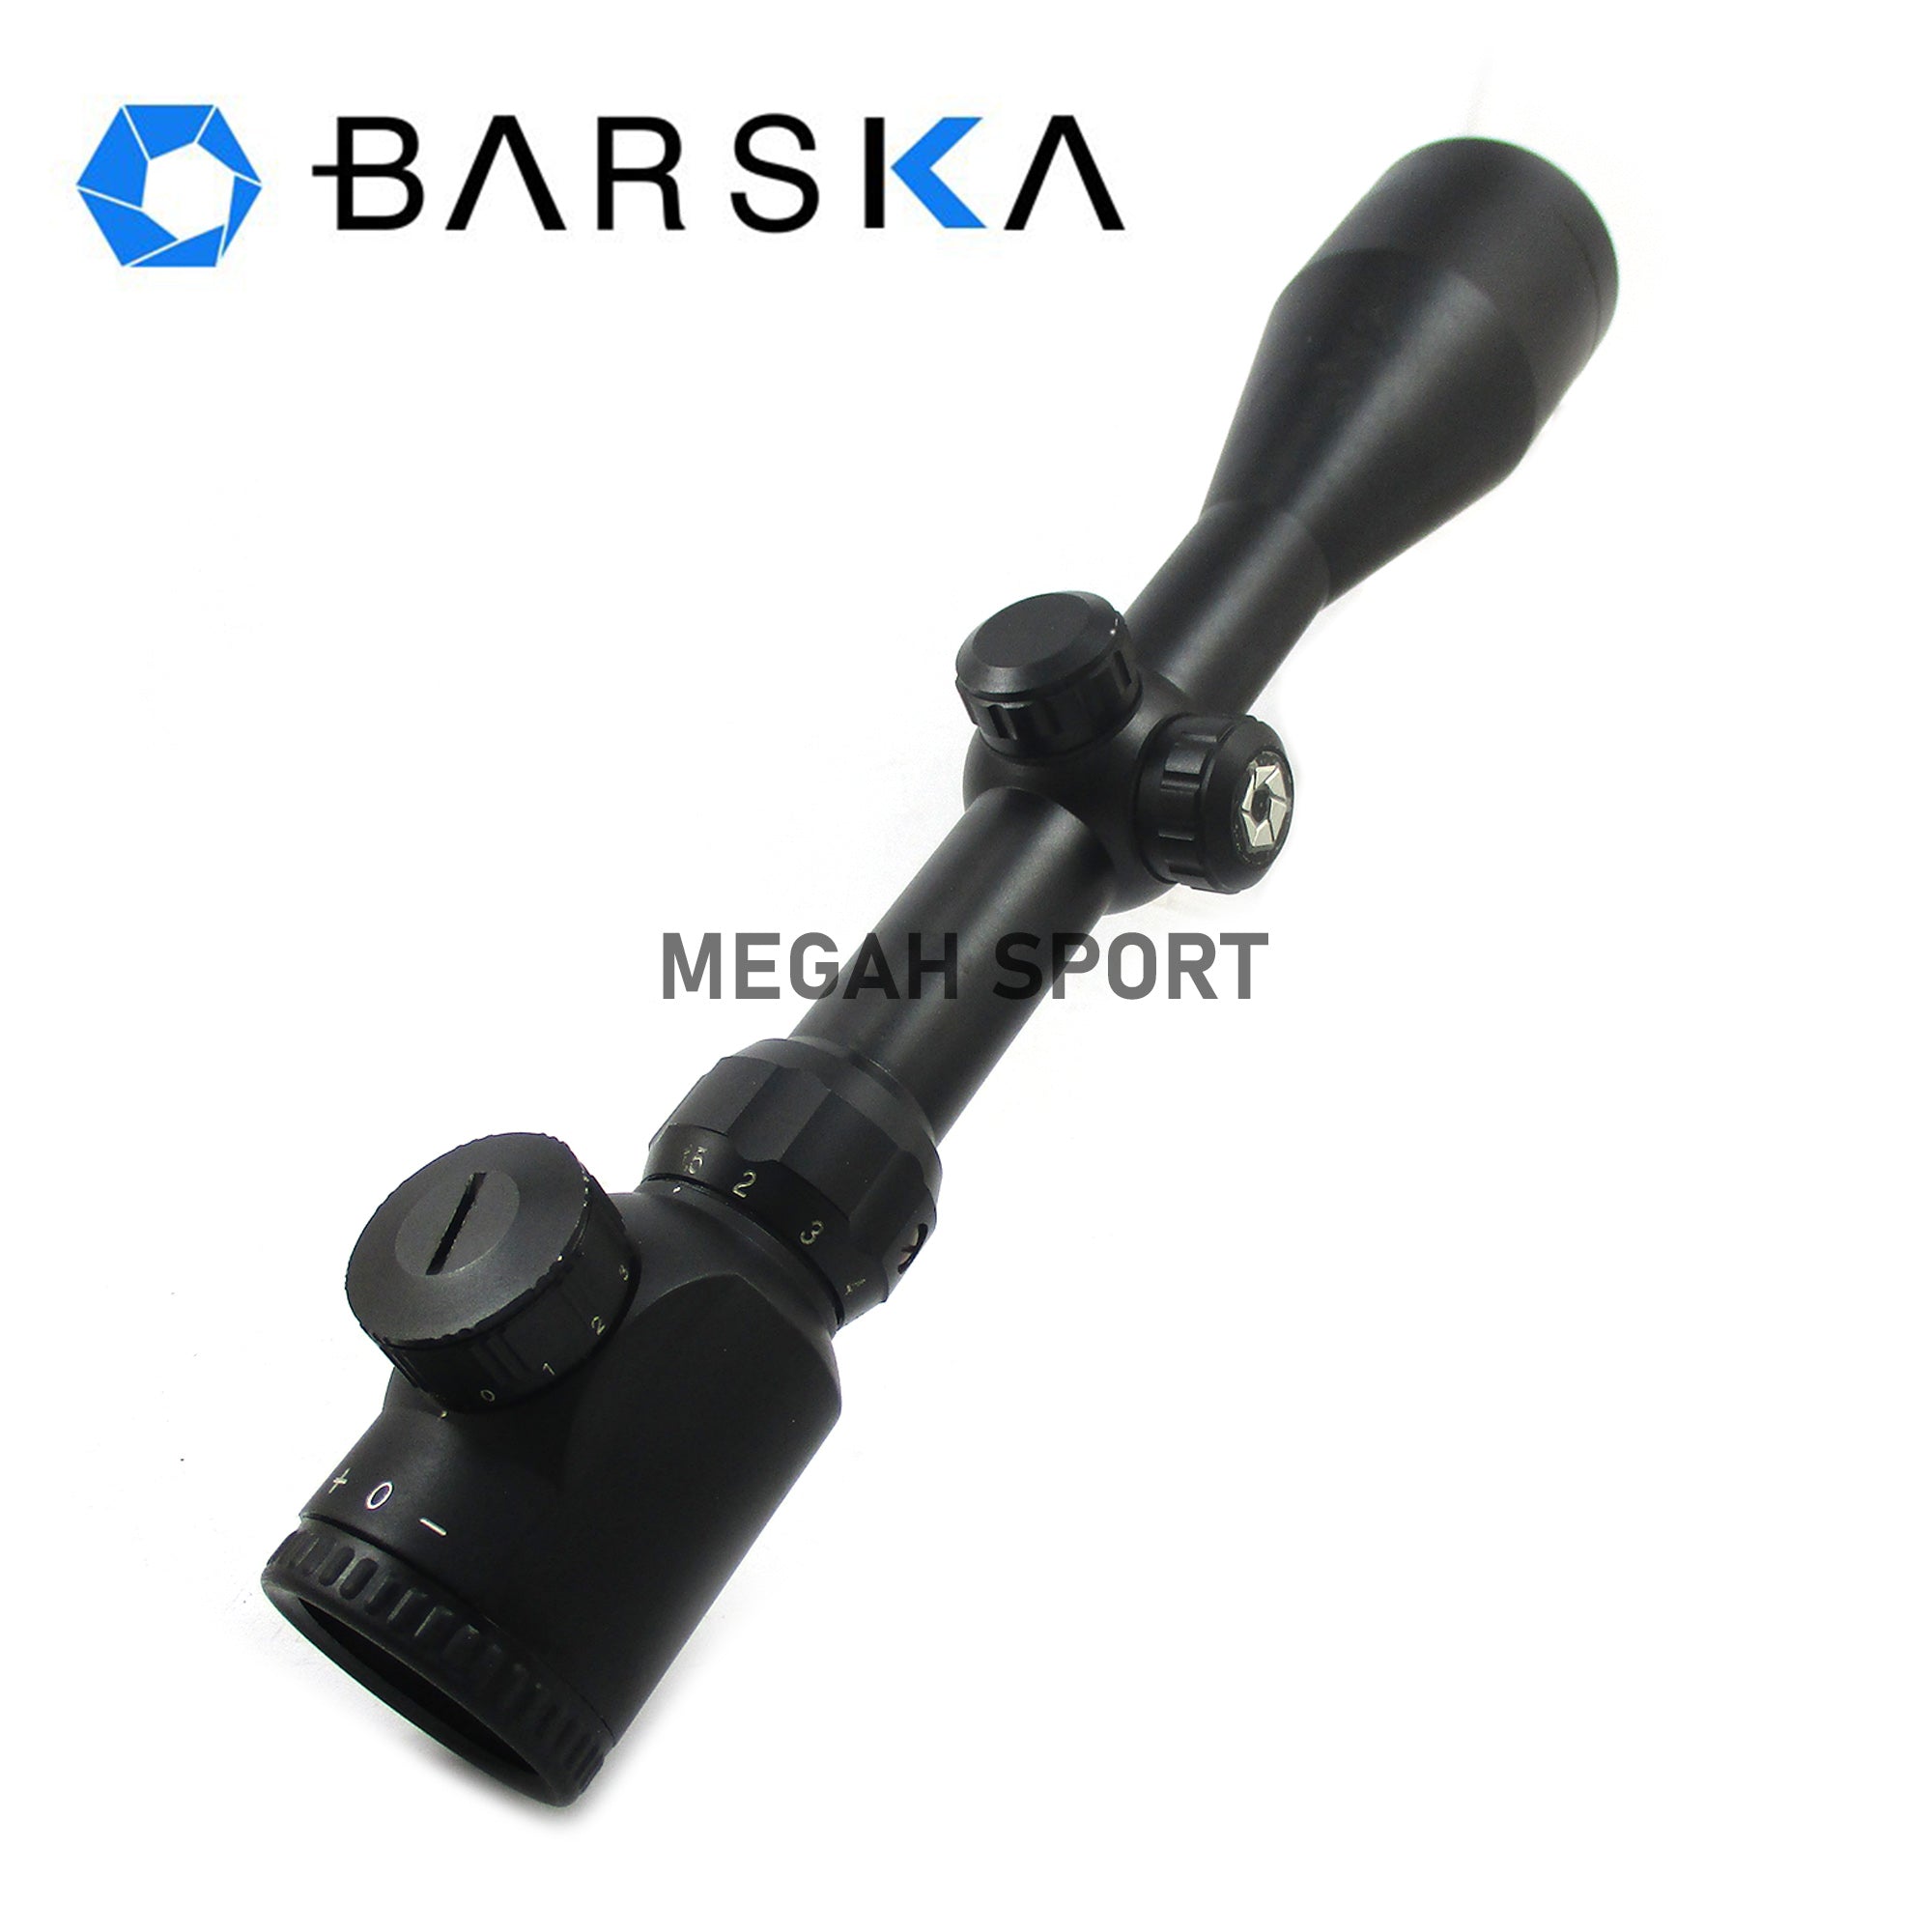 BARSKA 1.5-6X42 E (TC643) - Megah Sport